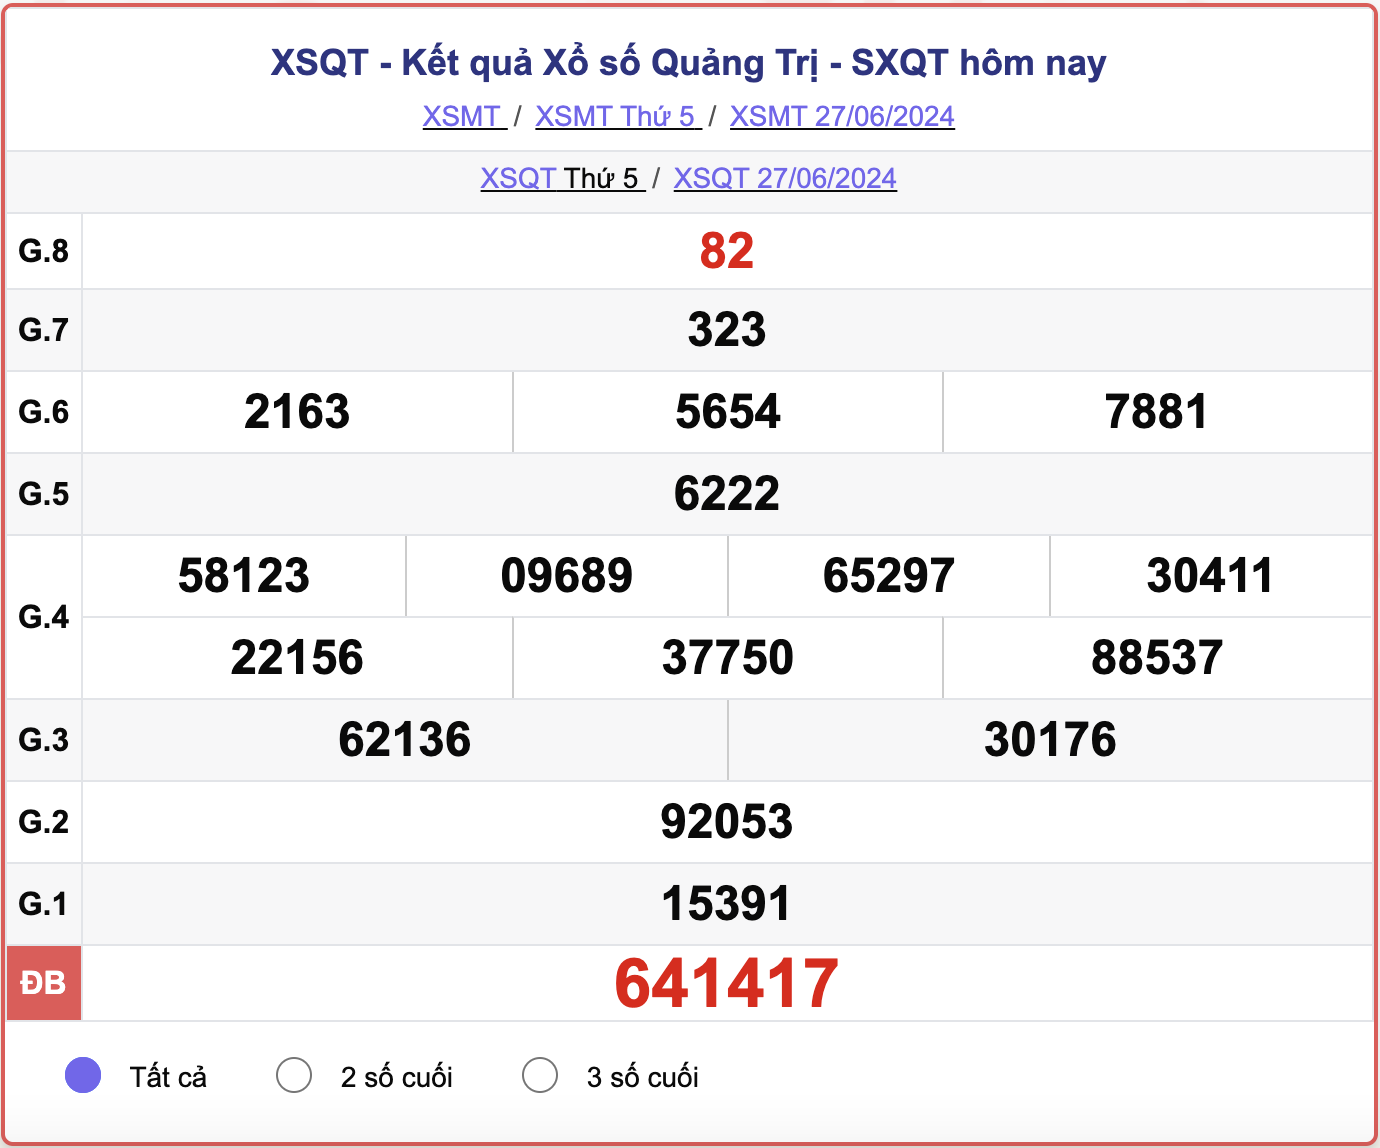 XSQT 27/6, kết quả xổ số Quảng Trị hôm nay 27/6/2024.